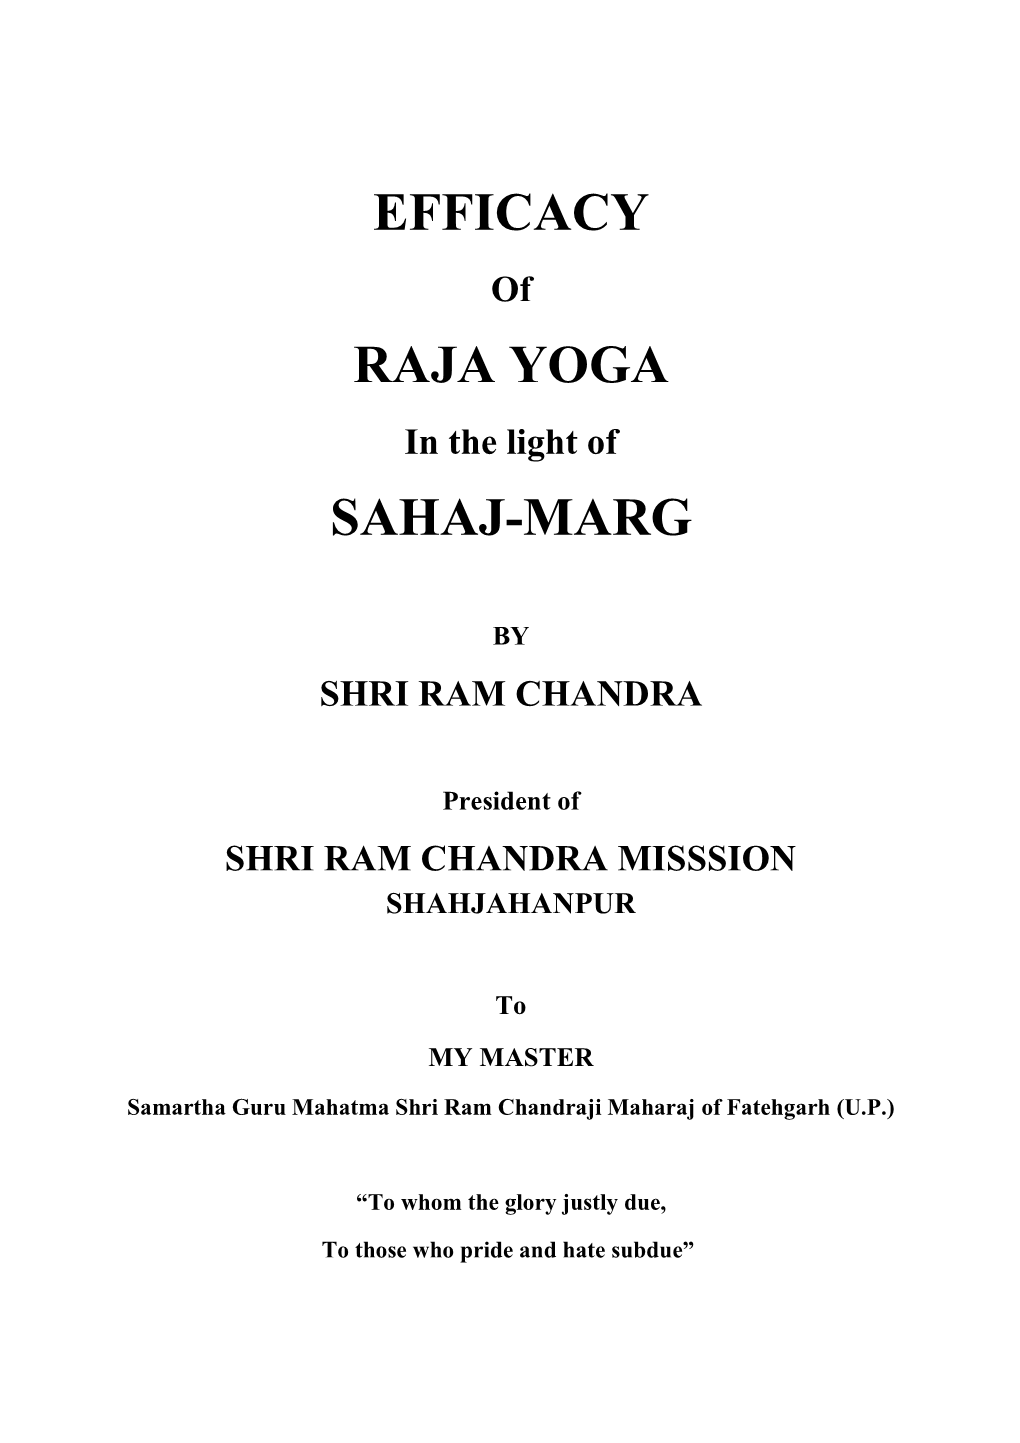 Efficacy Raja Yoga Sahaj-Marg